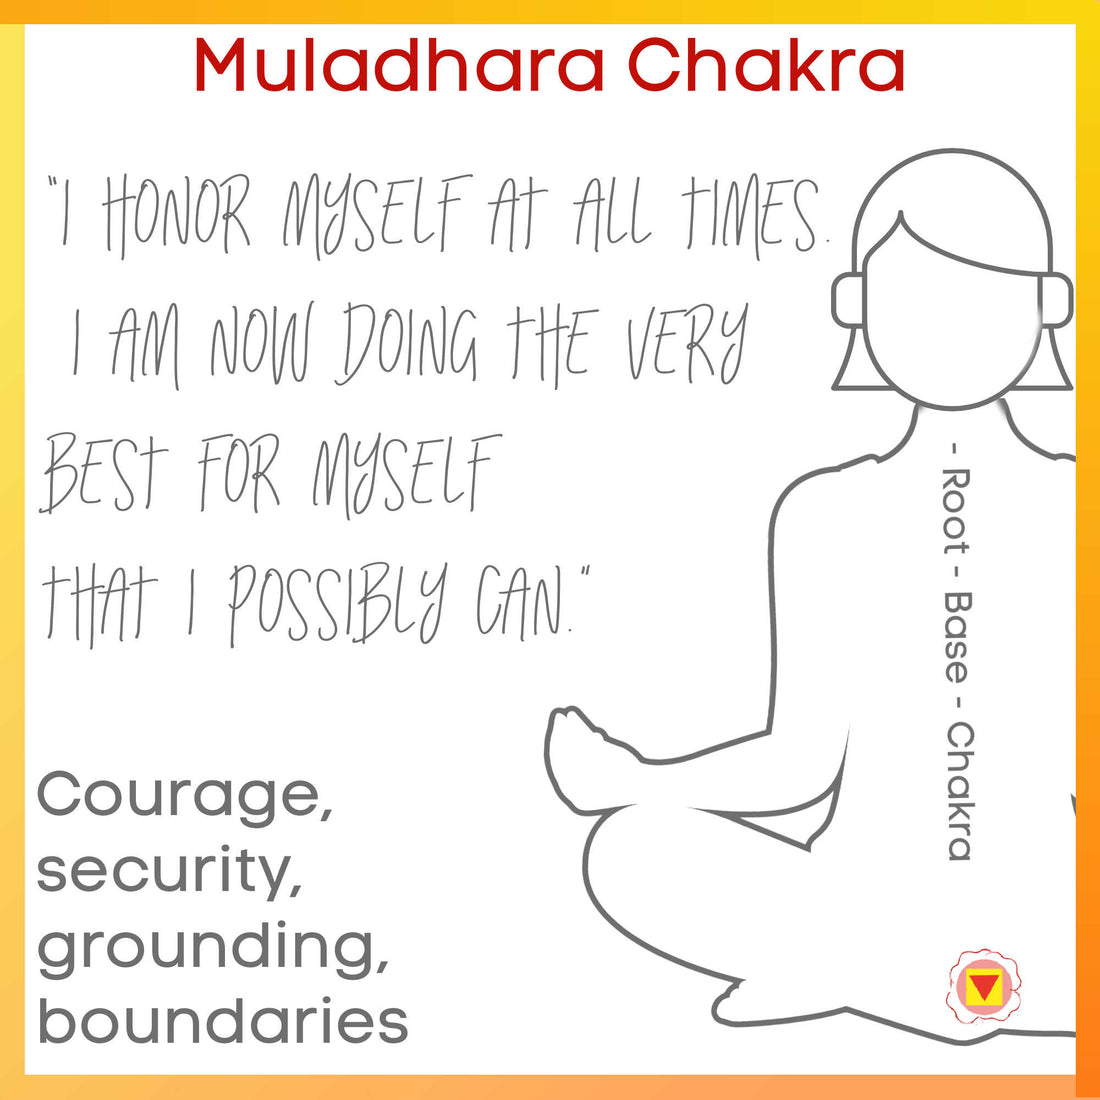 Chakra meanings - Muladhara Root Chakra - The Base Chakra